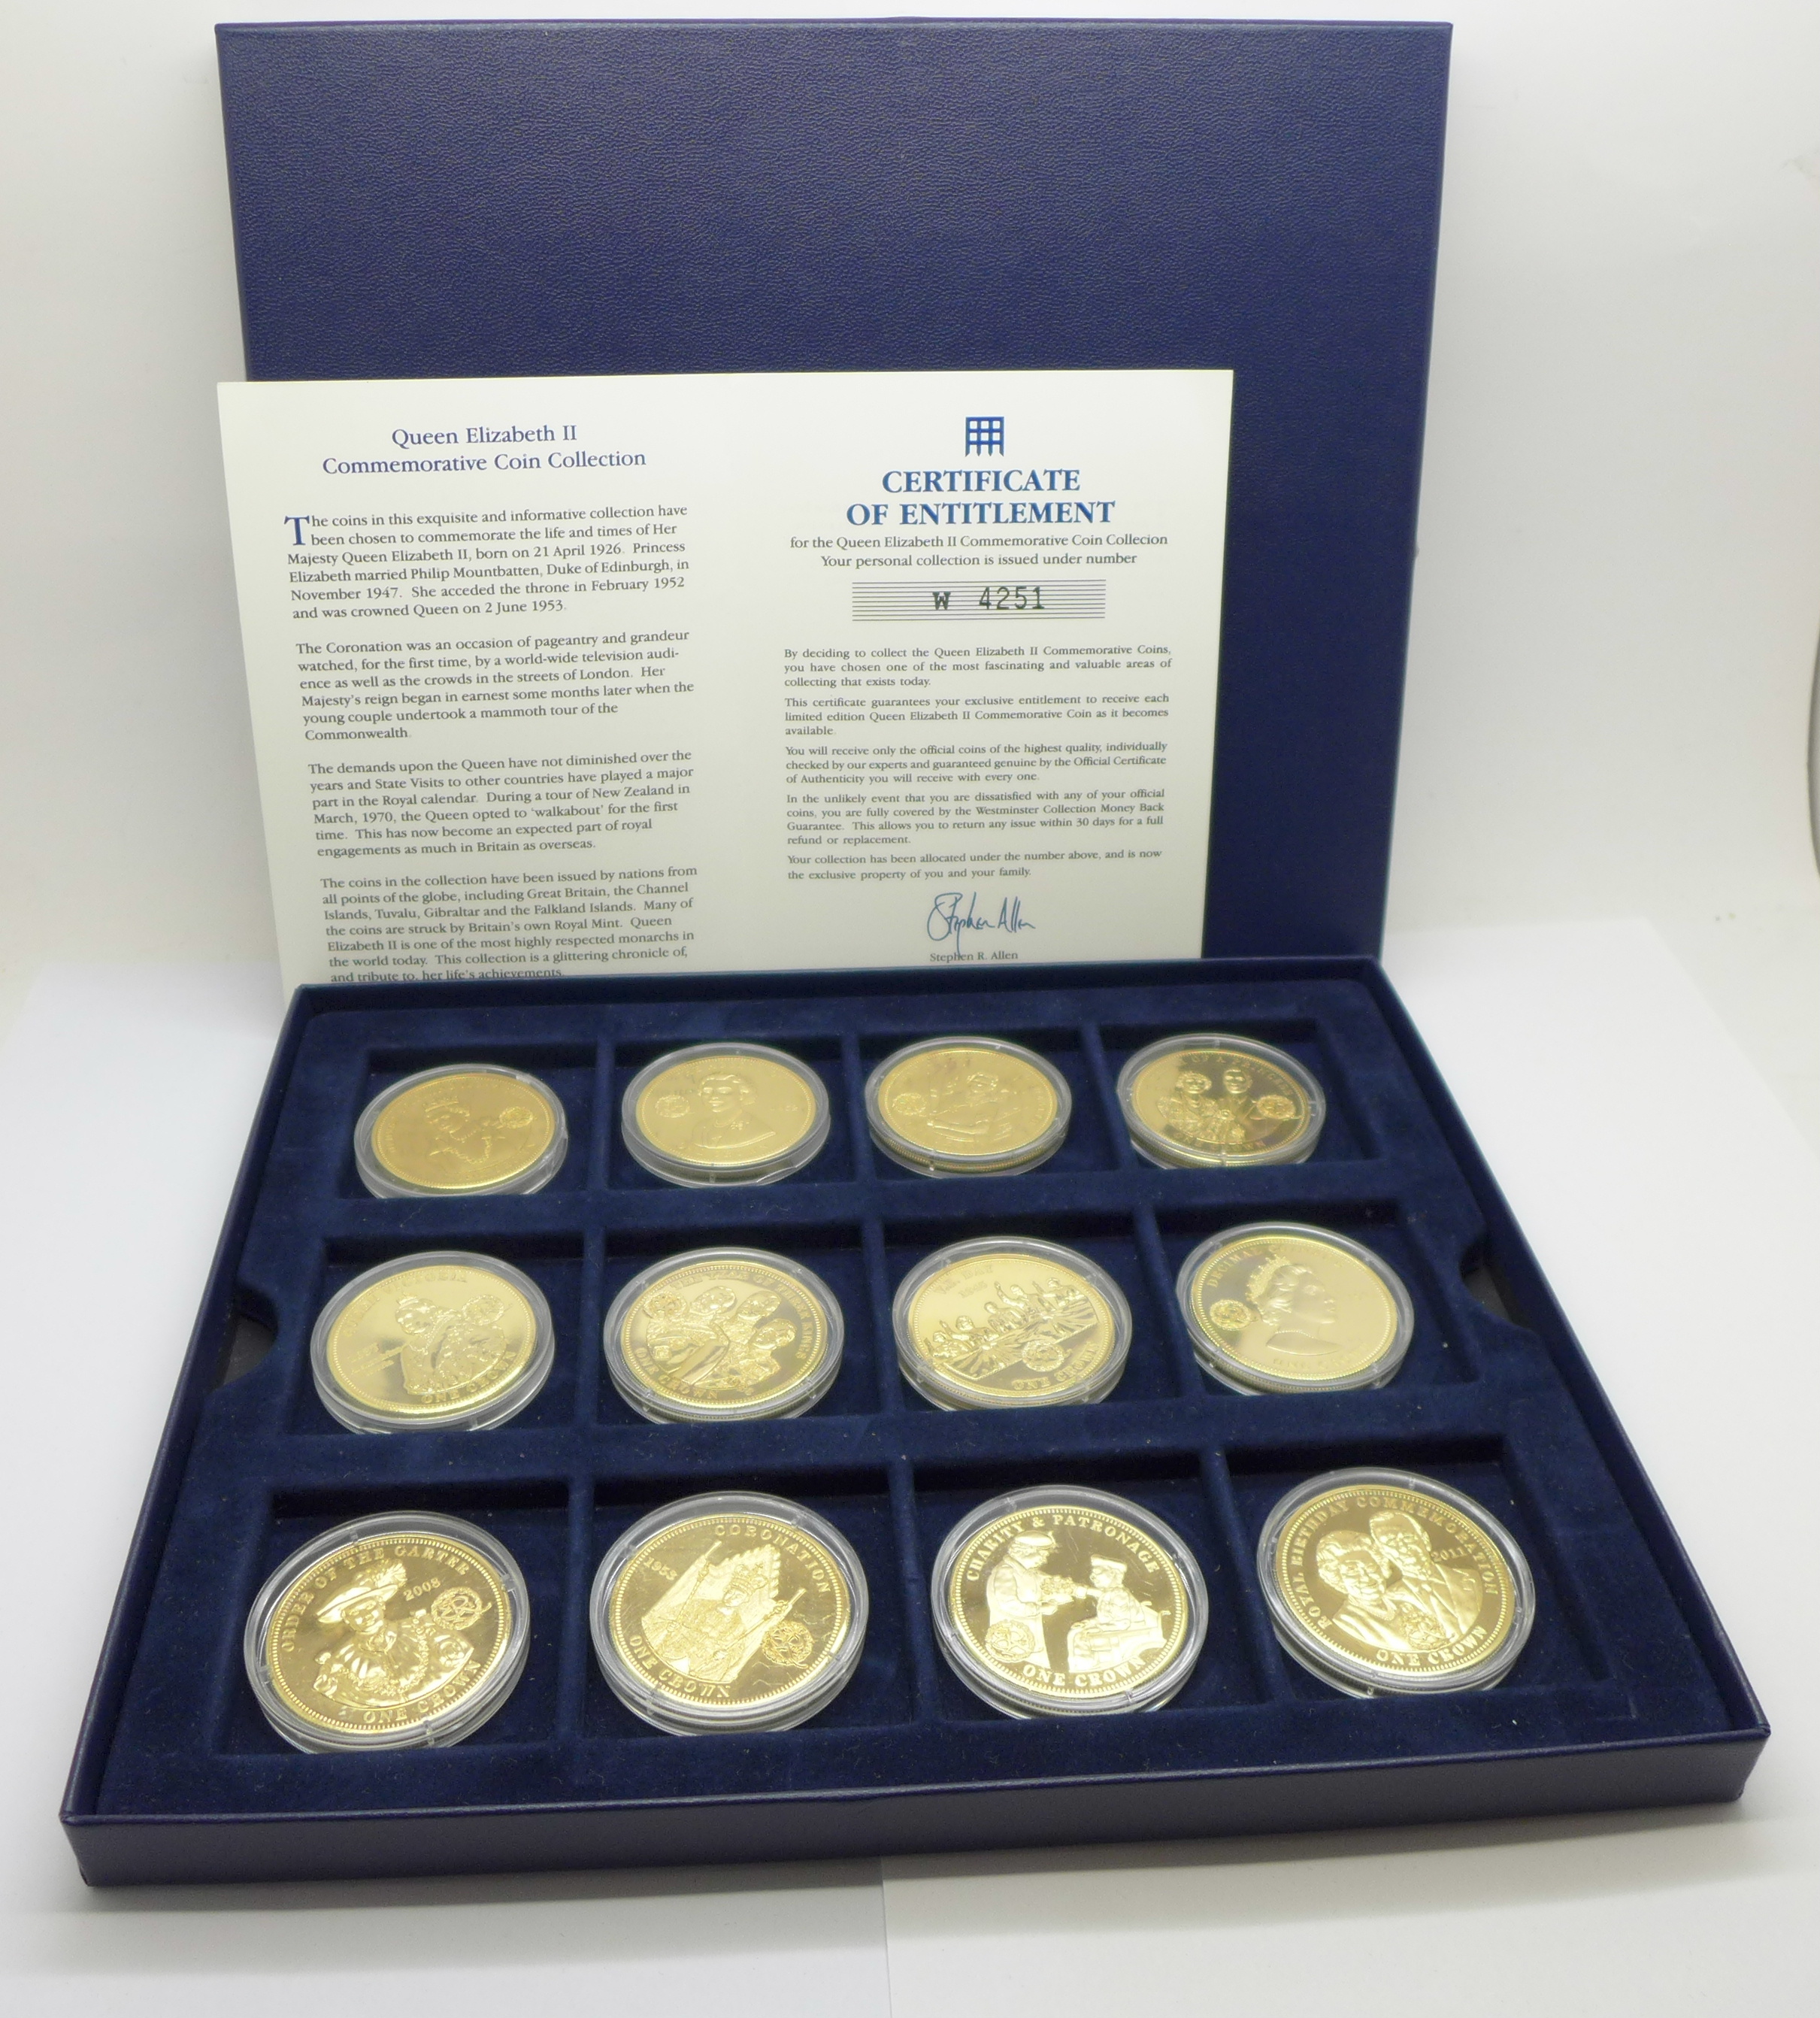 A set of twelve Queen Elizabeth II commemorative coins